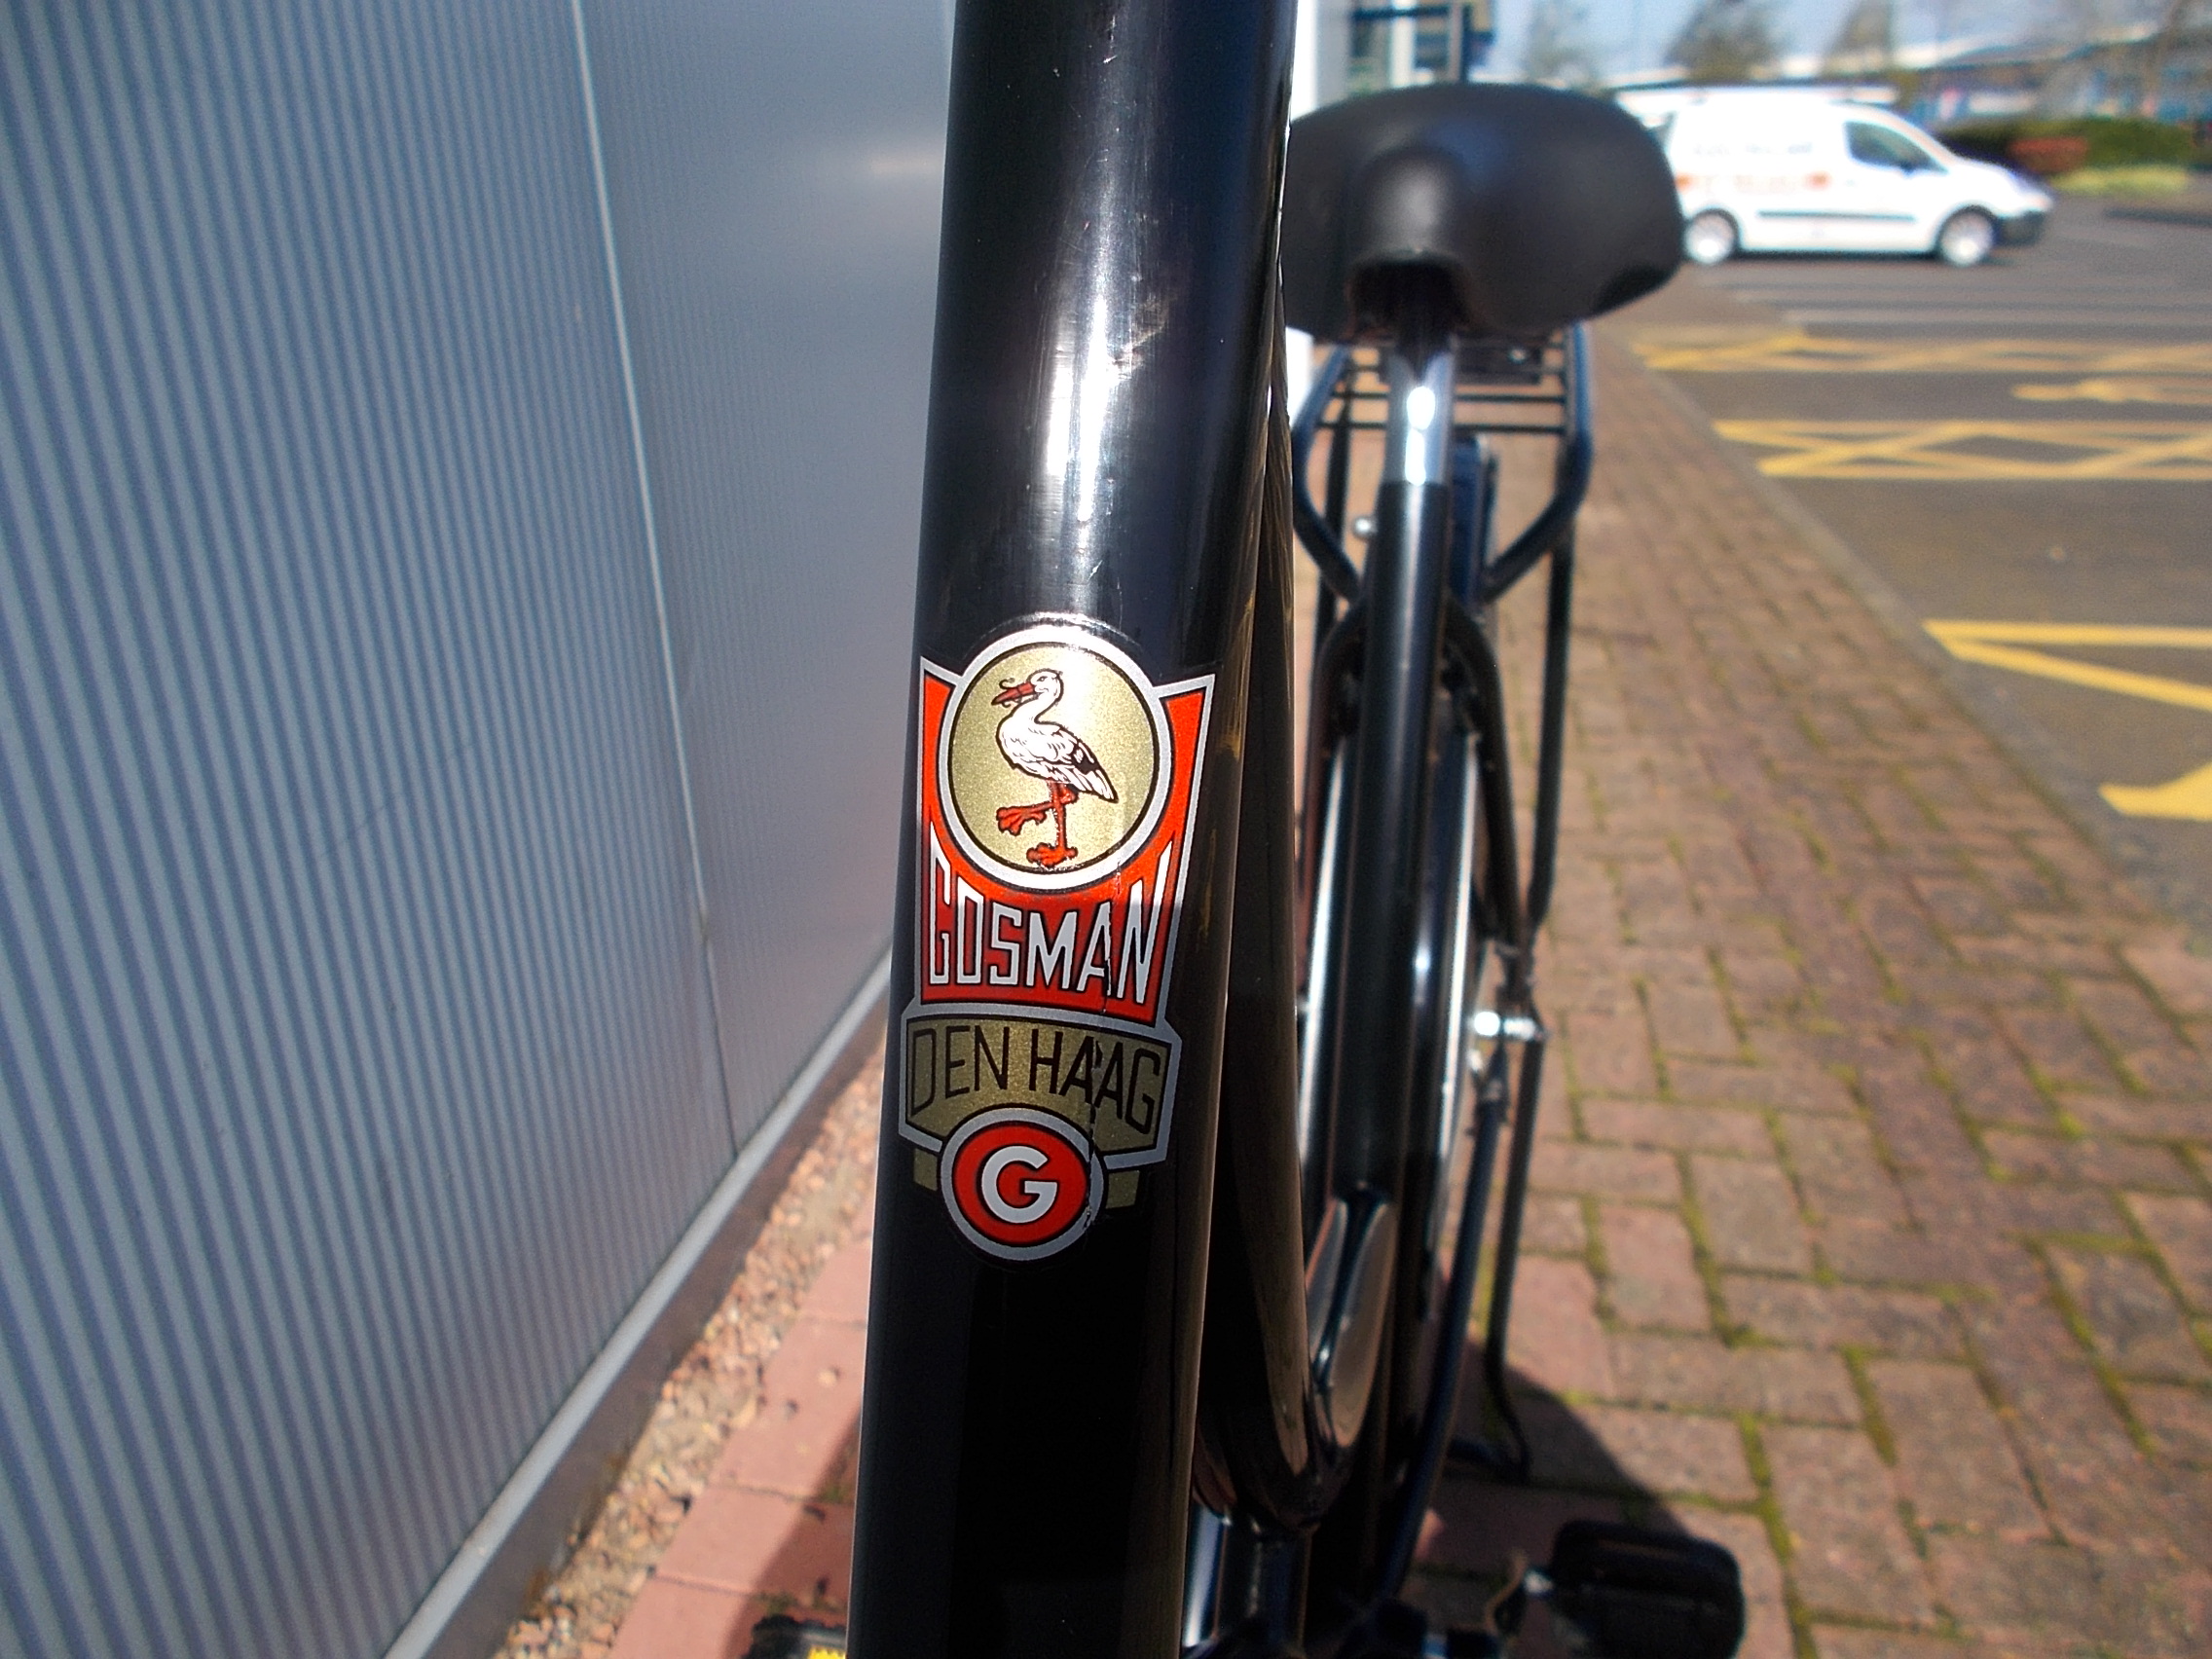 Gosman 19.75" Dutch Bicycle